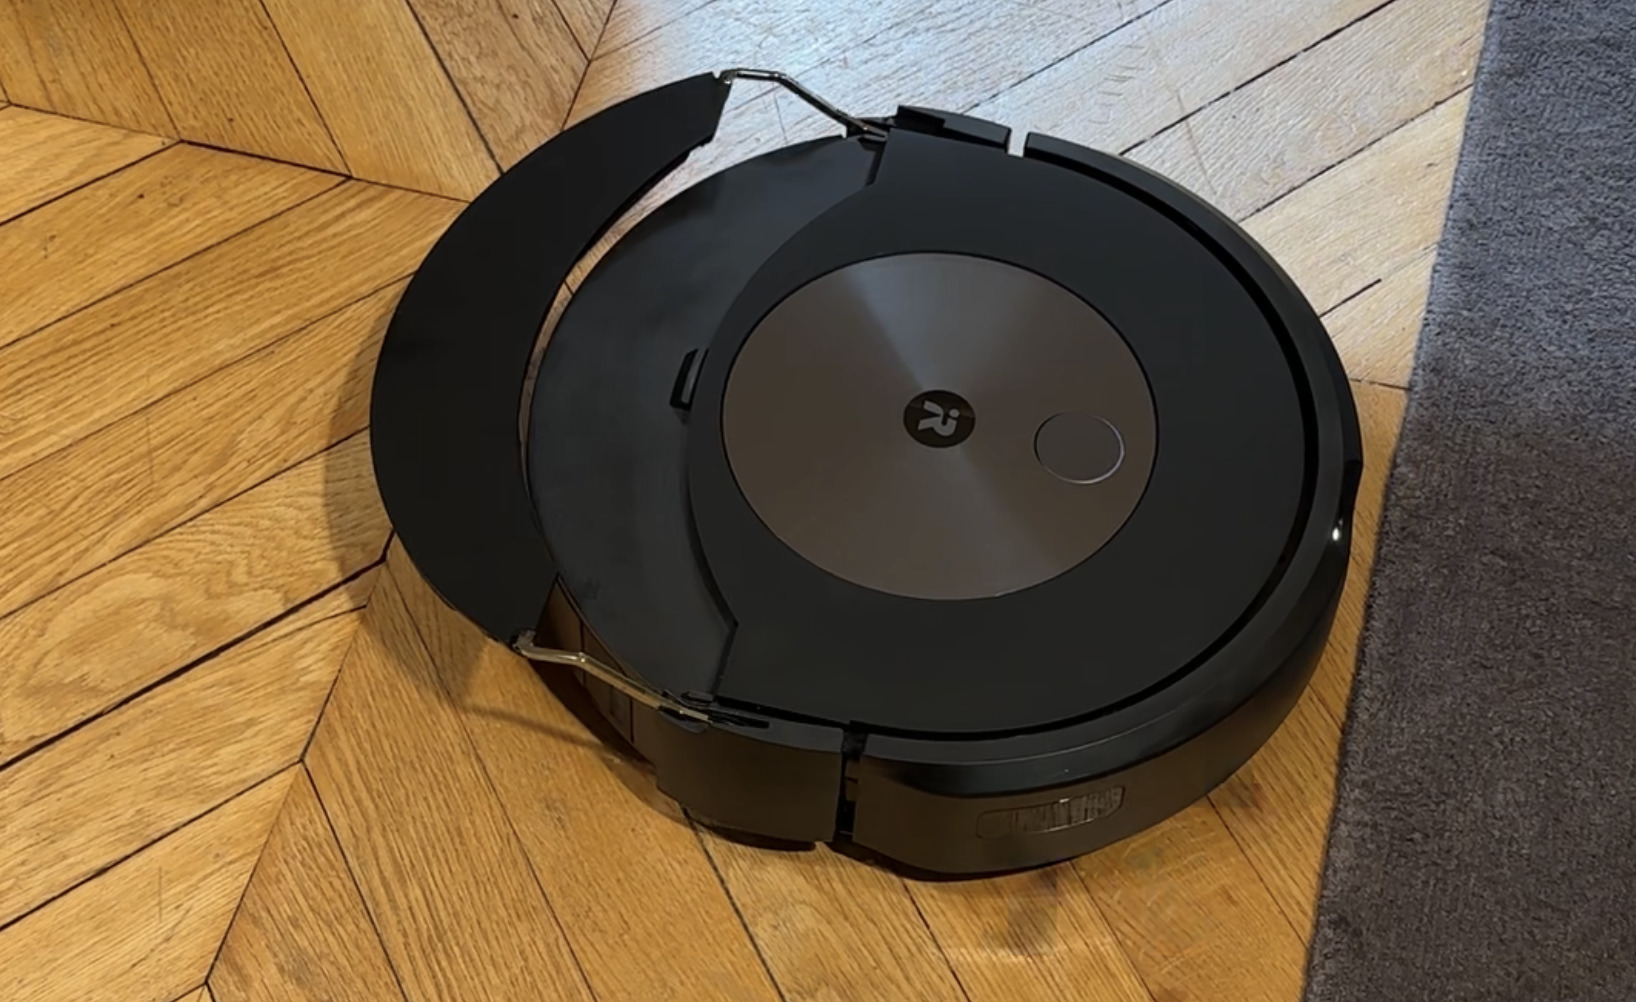 Robot aspirateur Roomba d'iRobot : tous les derniers modèles